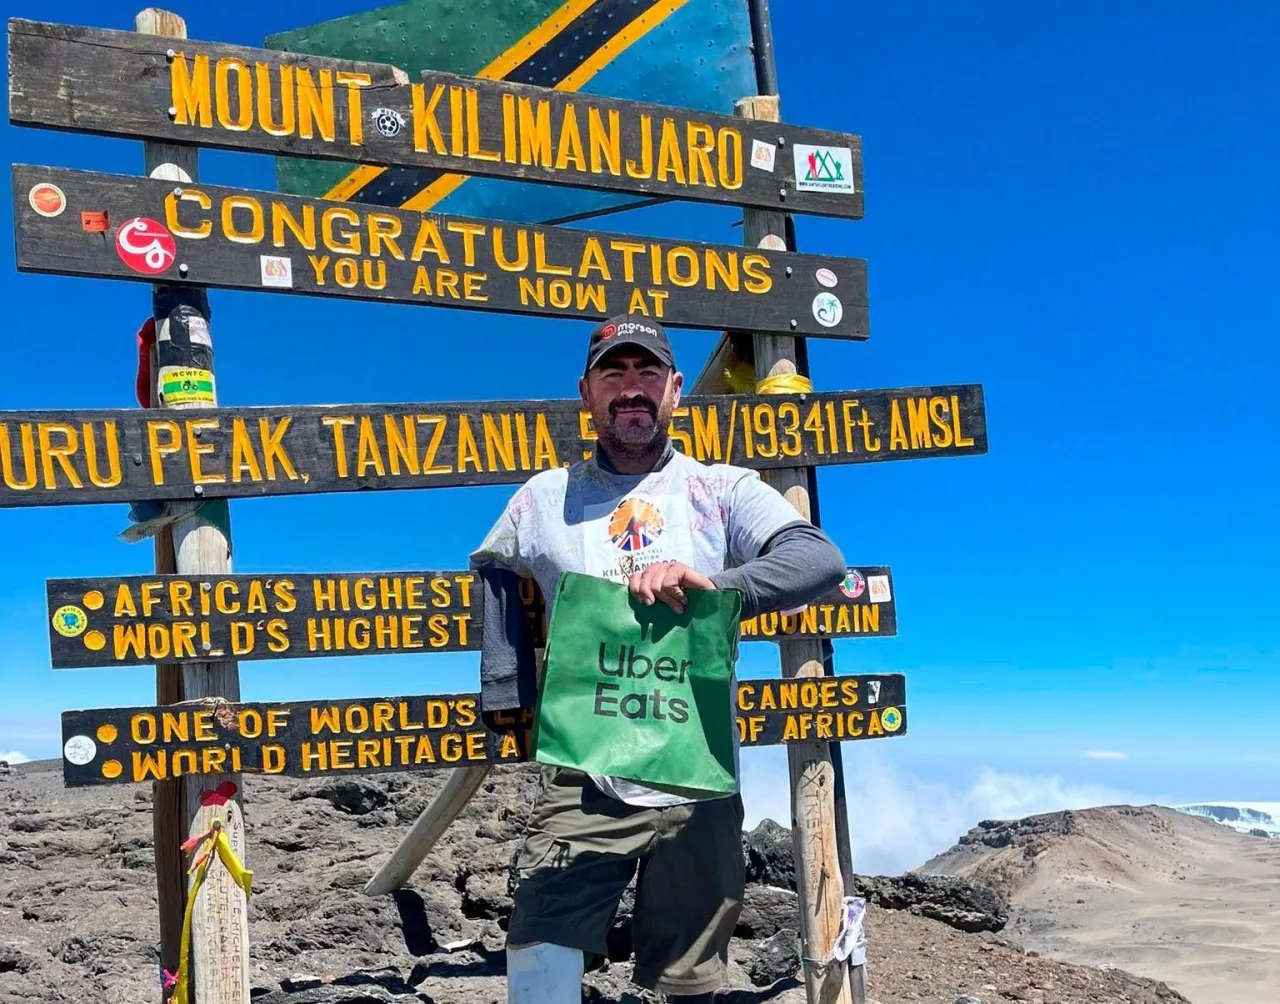 Andy Reid dostarczył burgera na szczyt Kilimandżaro (Uber Eats)